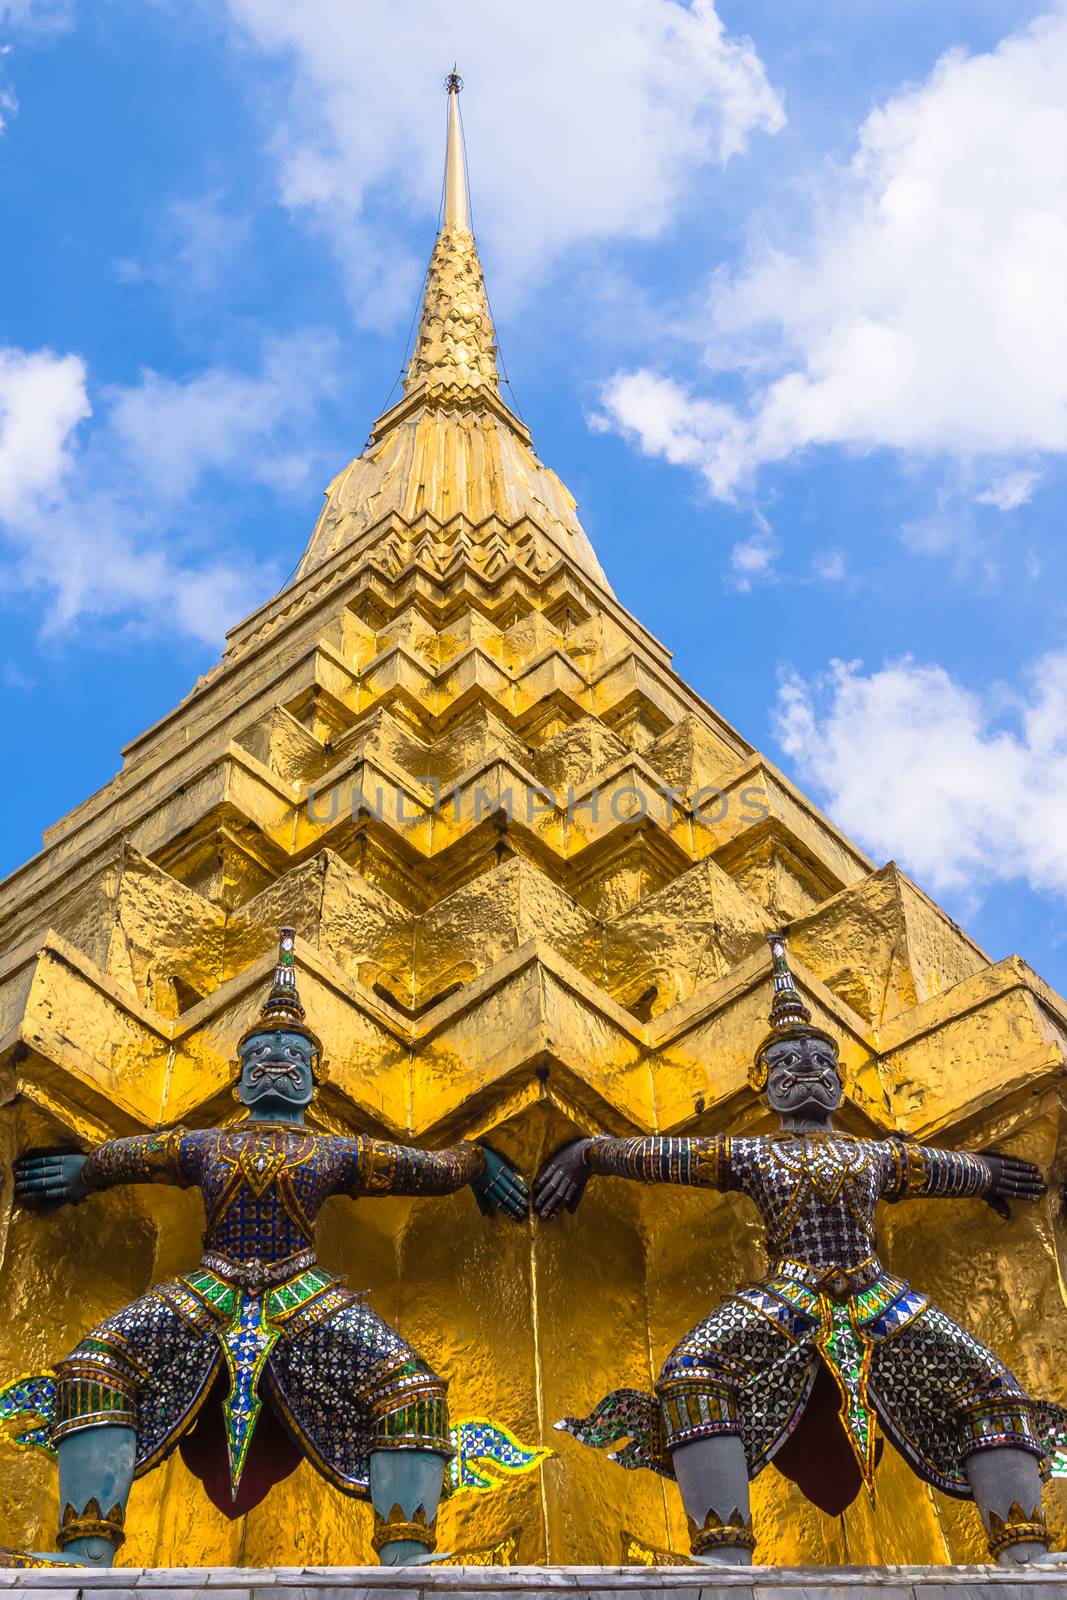 Architectural details of The Wat Phra Kaew by pawel_szczepanski